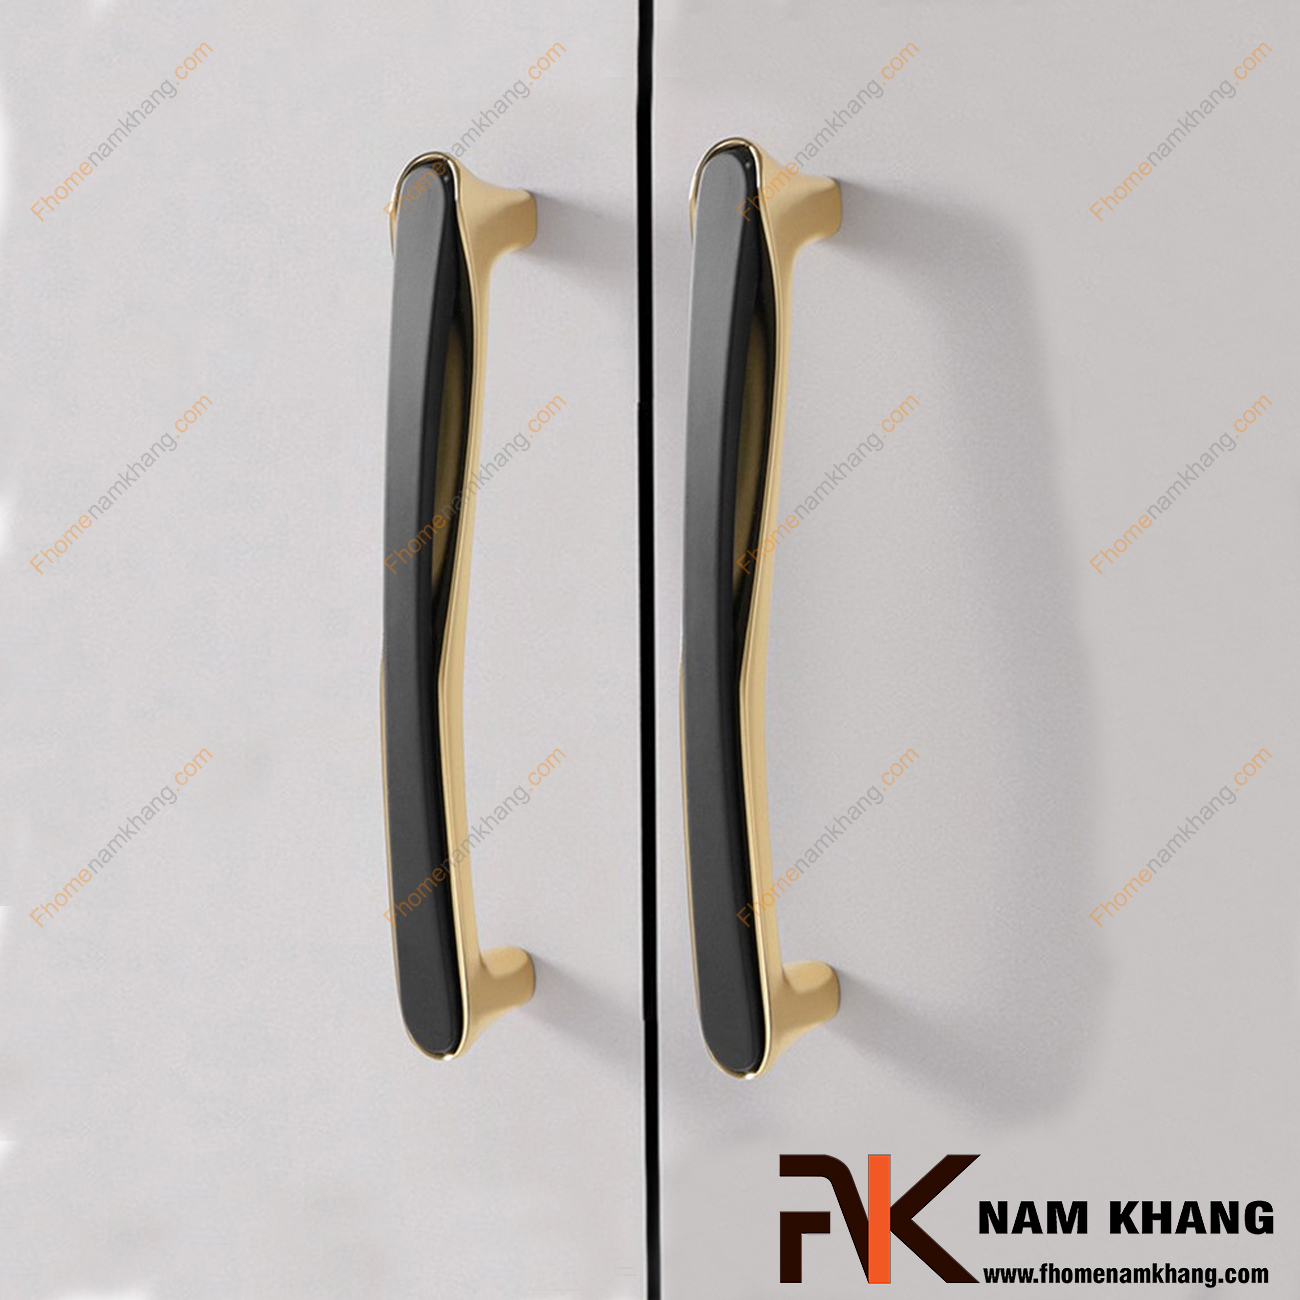 Tay nắm tủ phối hợp cao cấp đế vàng bóng NK398-NVD - dòng tay nắm tủ đặc trưng cho thiết kế tay nắm tủ lắp ghép từ 2 phần riêng biệt. 